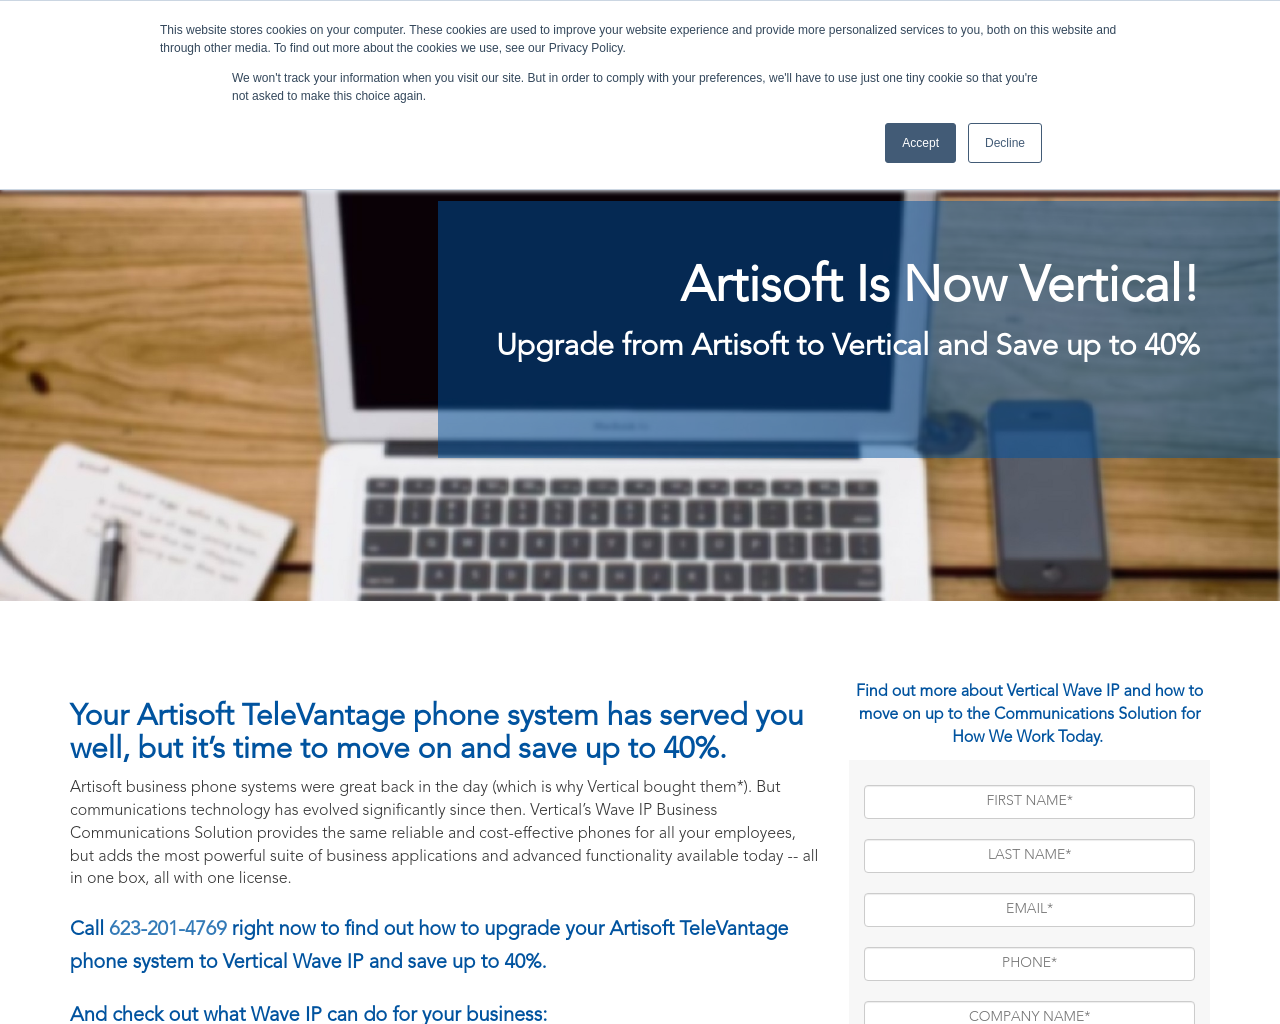 artisoft.com